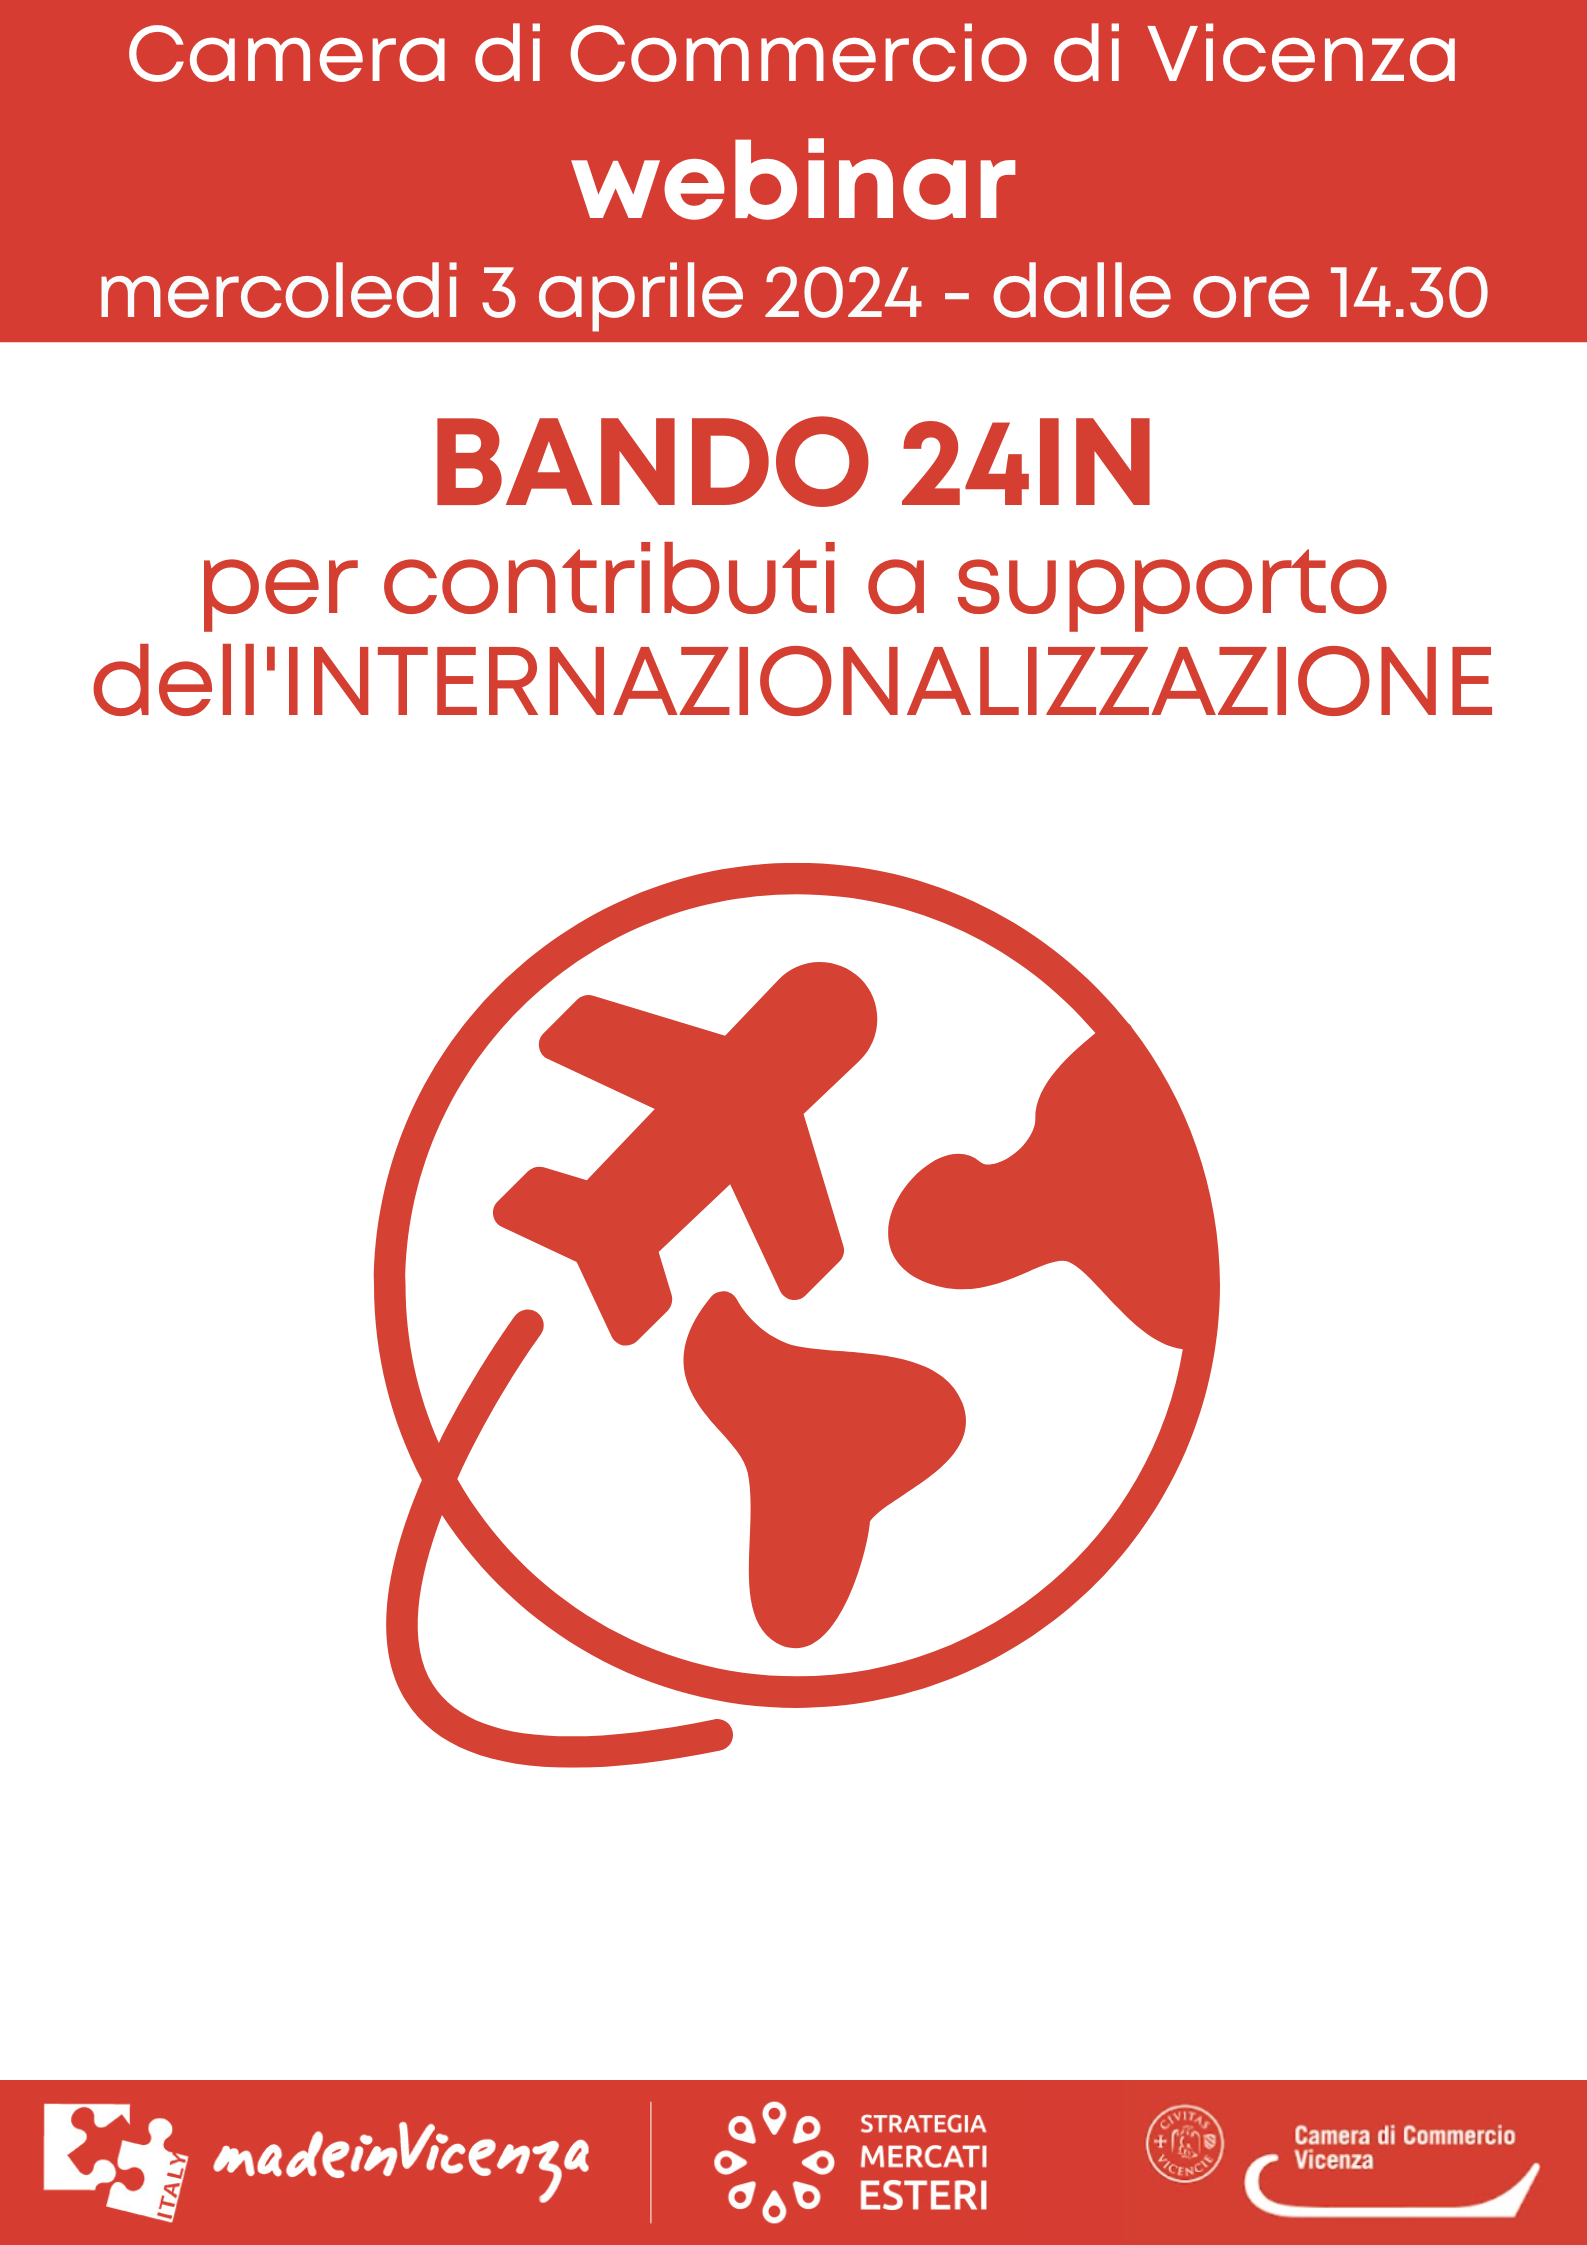 BANDO INTERNAZIONALIZZAZIONE - ANNO 2023 (23IN)